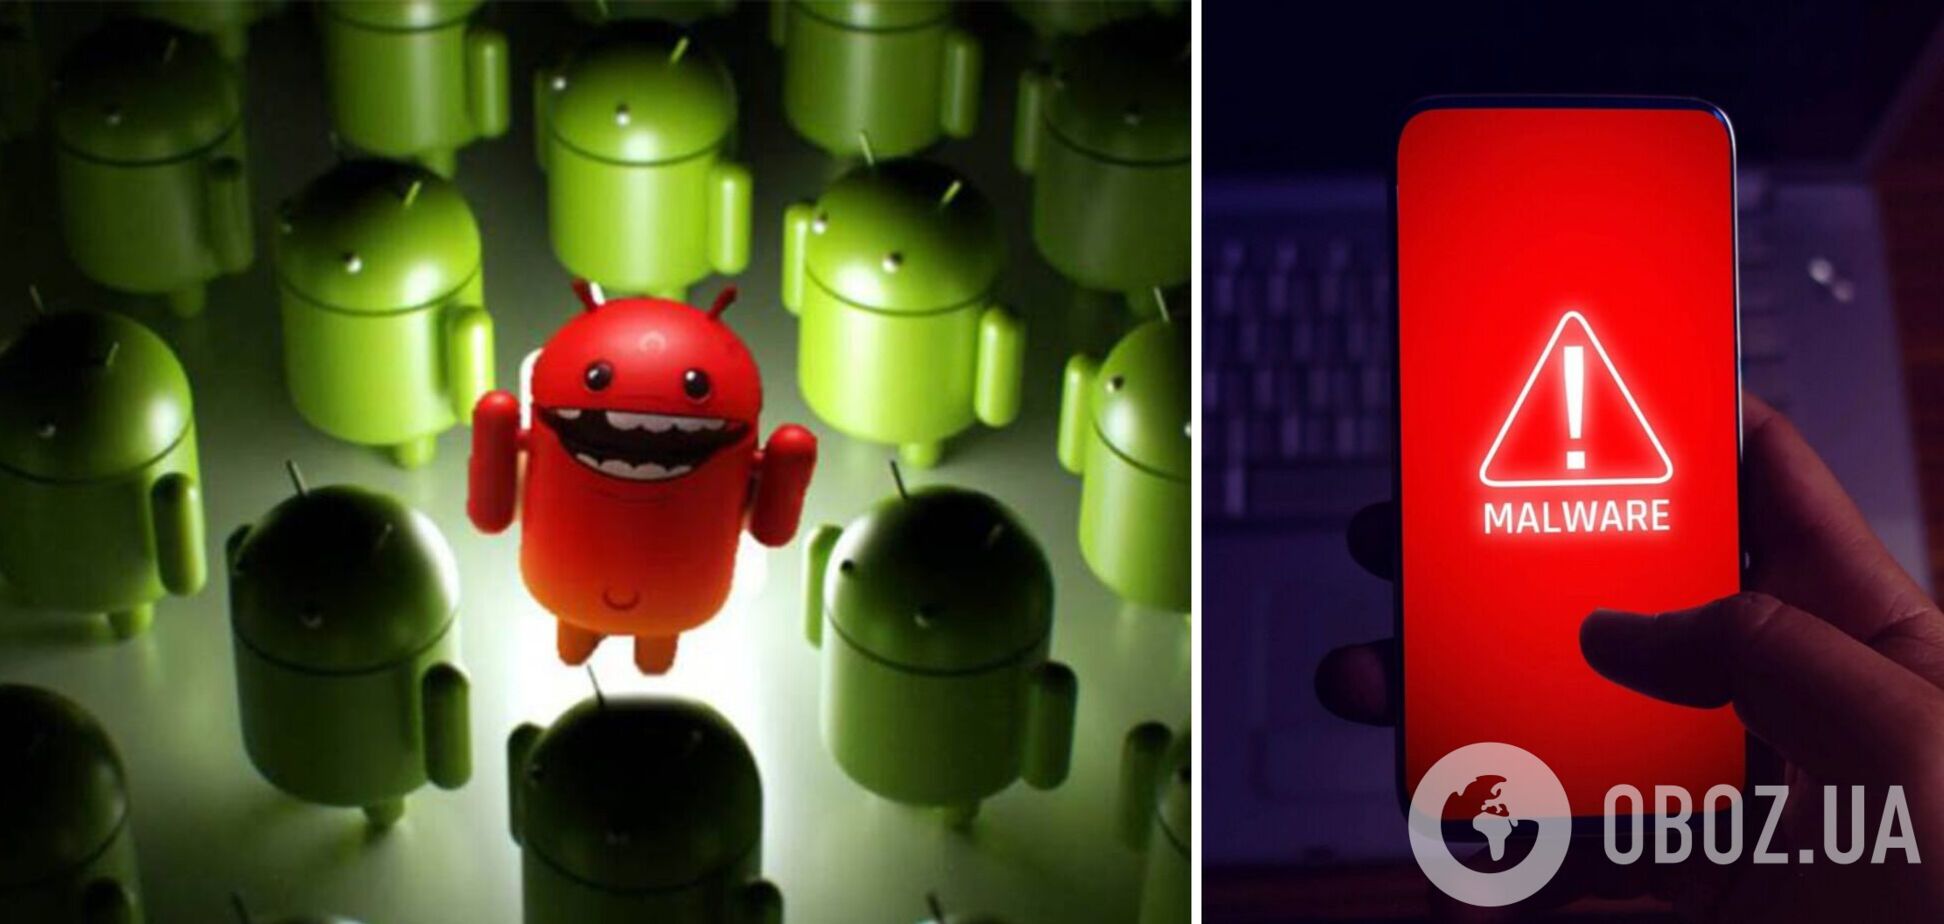 Приложение для ускорения Android похищало данные пользователей: проверьте свой смартфон